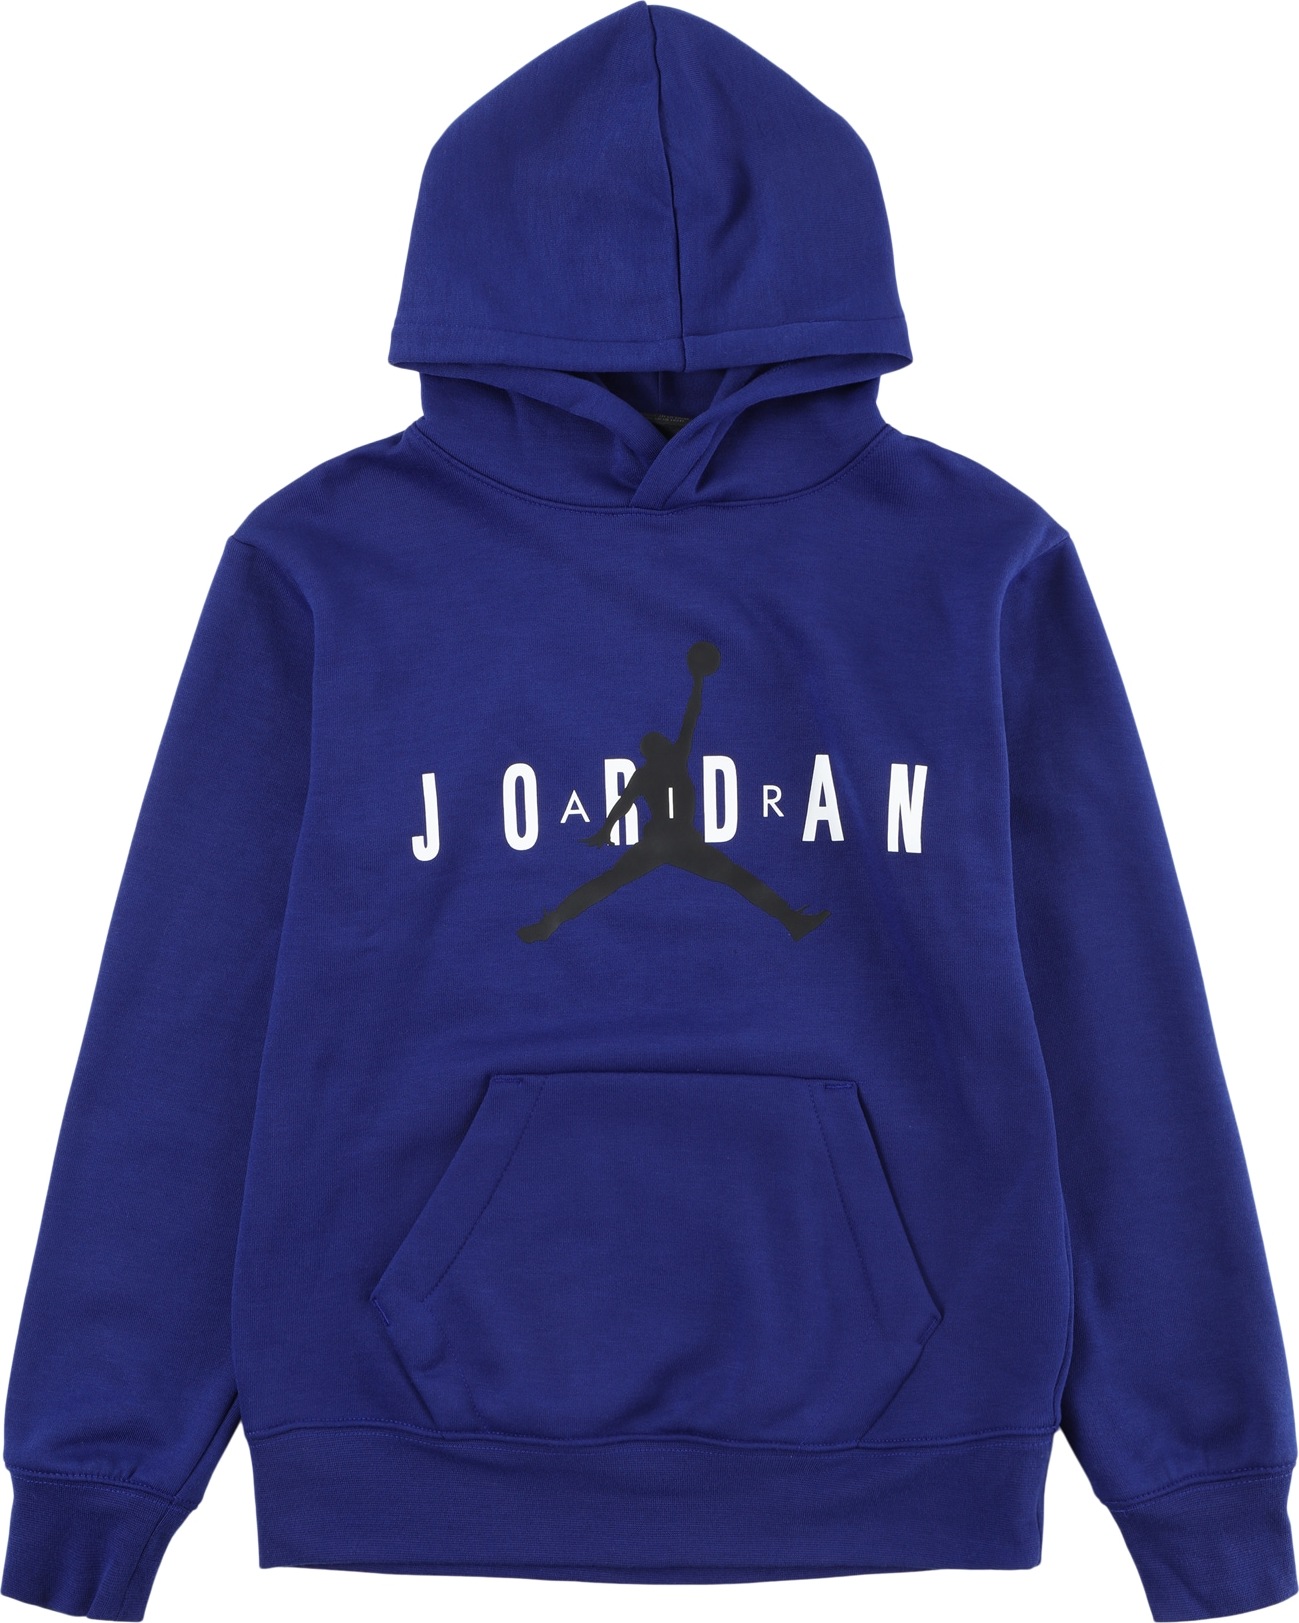 Sportovní mikina Jordan tmavě modrá / černá / offwhite